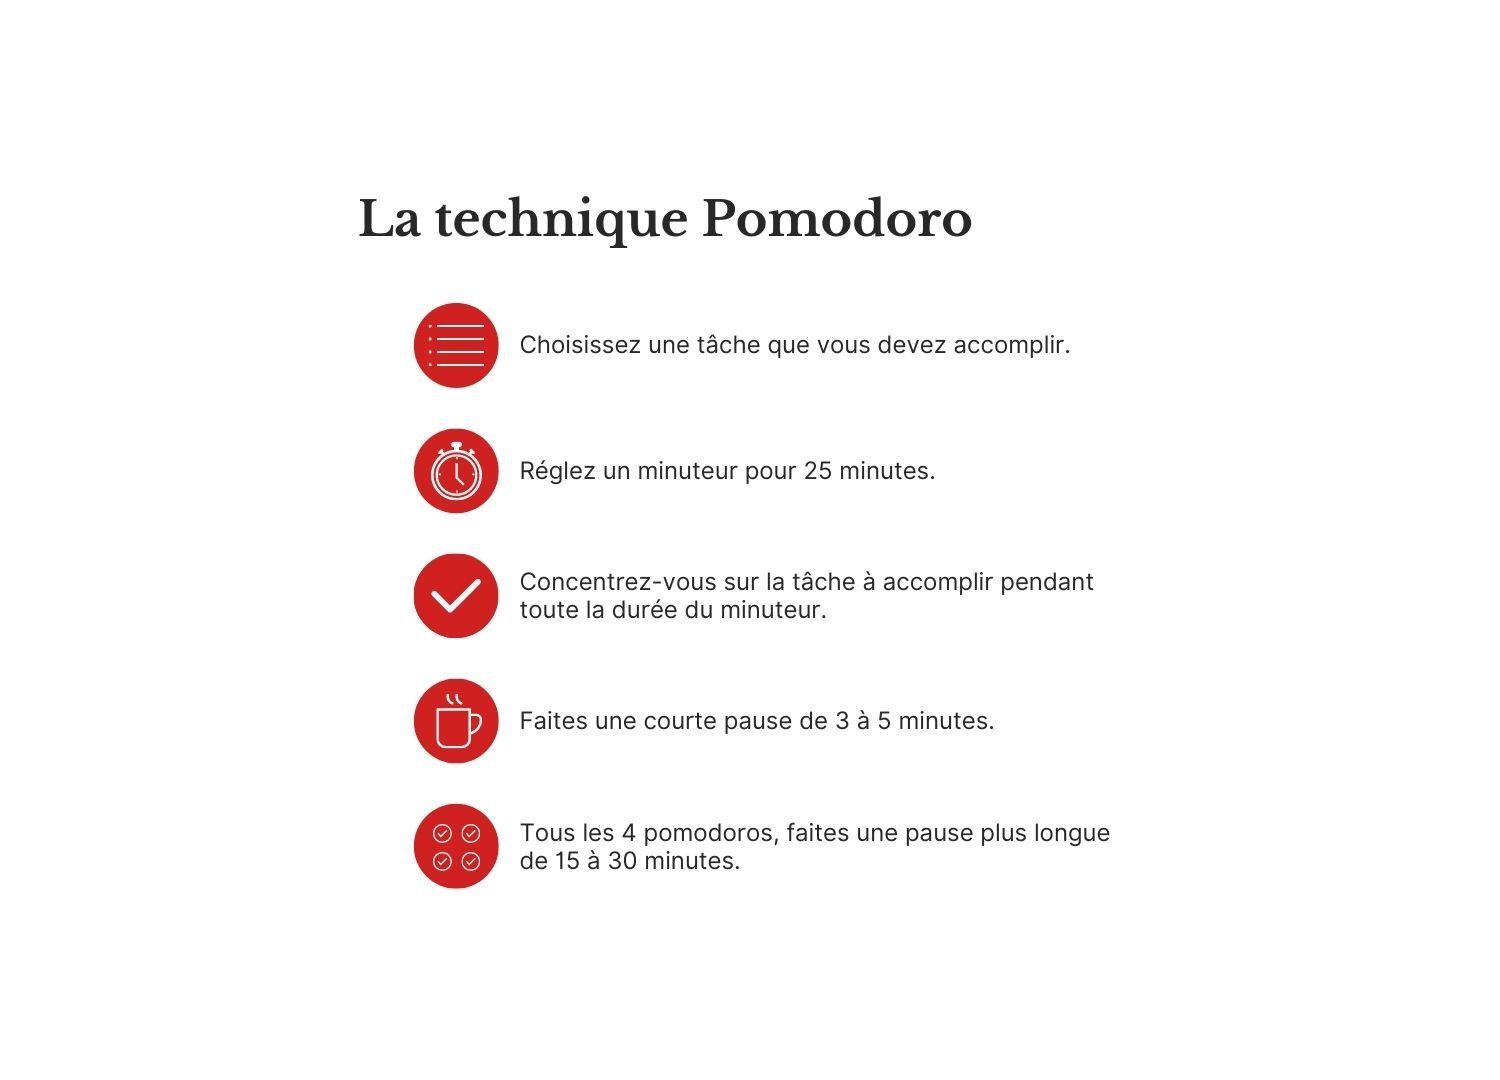 1 FRInfographie présentant les cinq étapes de la technique Pomodoro. 